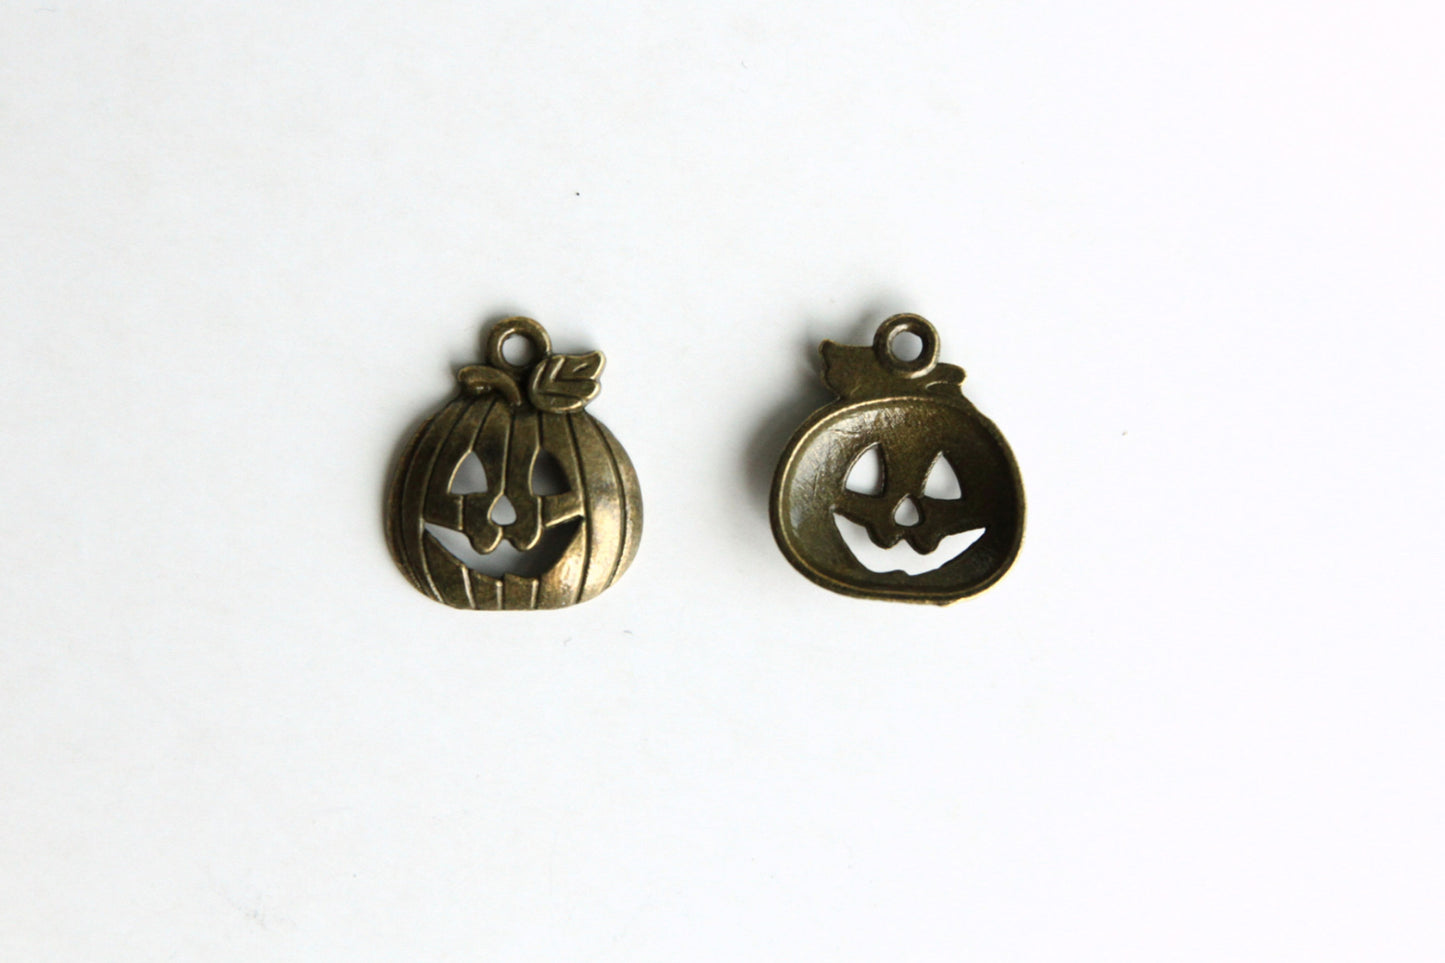 Charm - Halloween Pumpkin, Antique Brass - KEY Handmade
 - 1